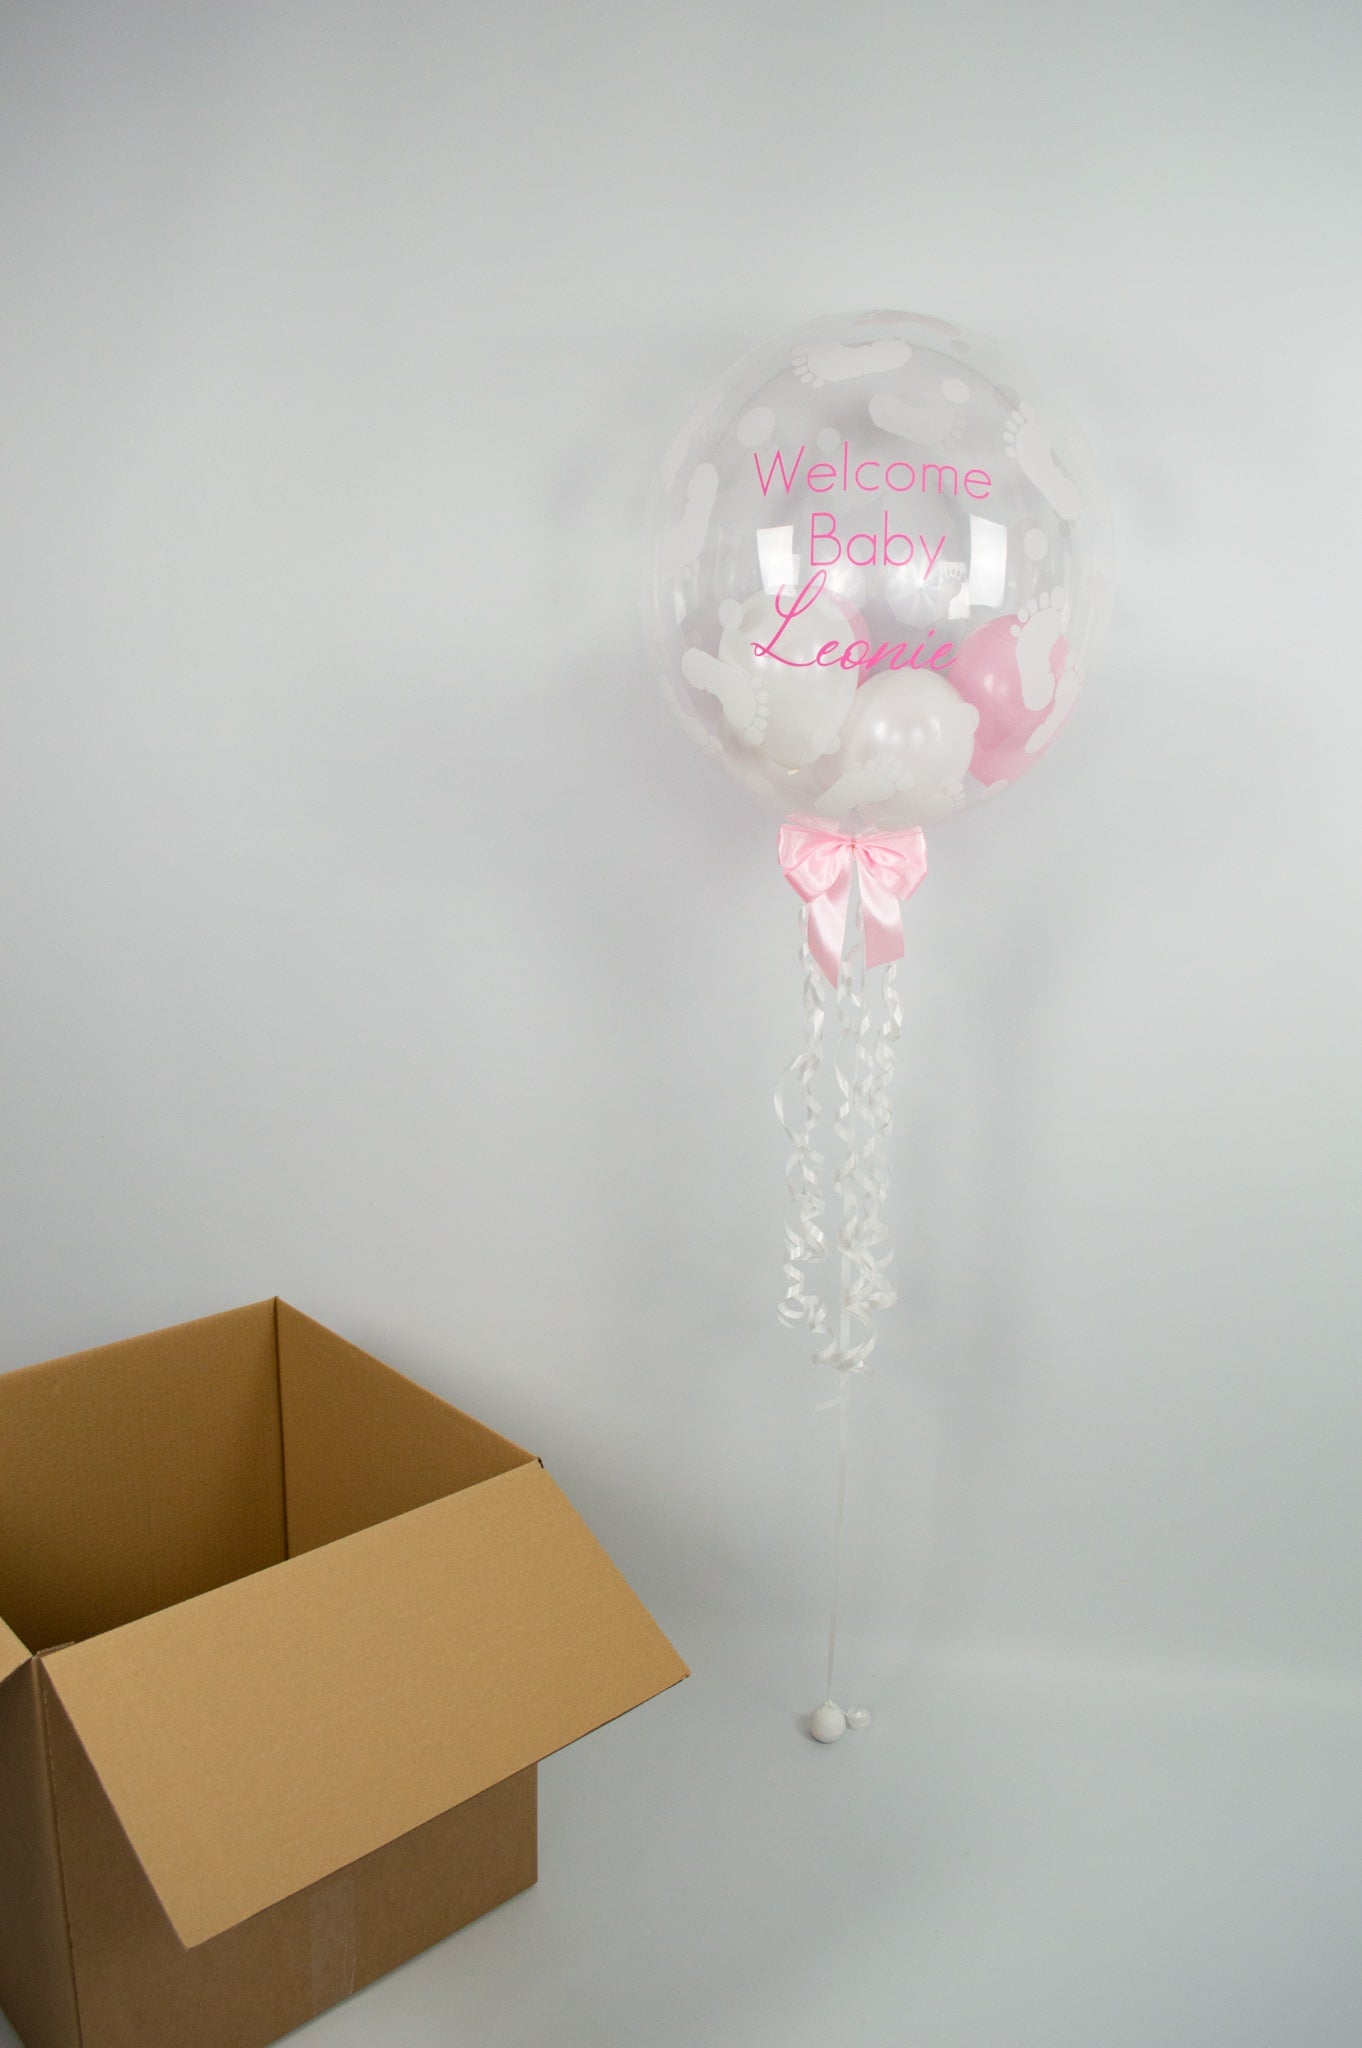 Geburt Mädchen Heliumballon